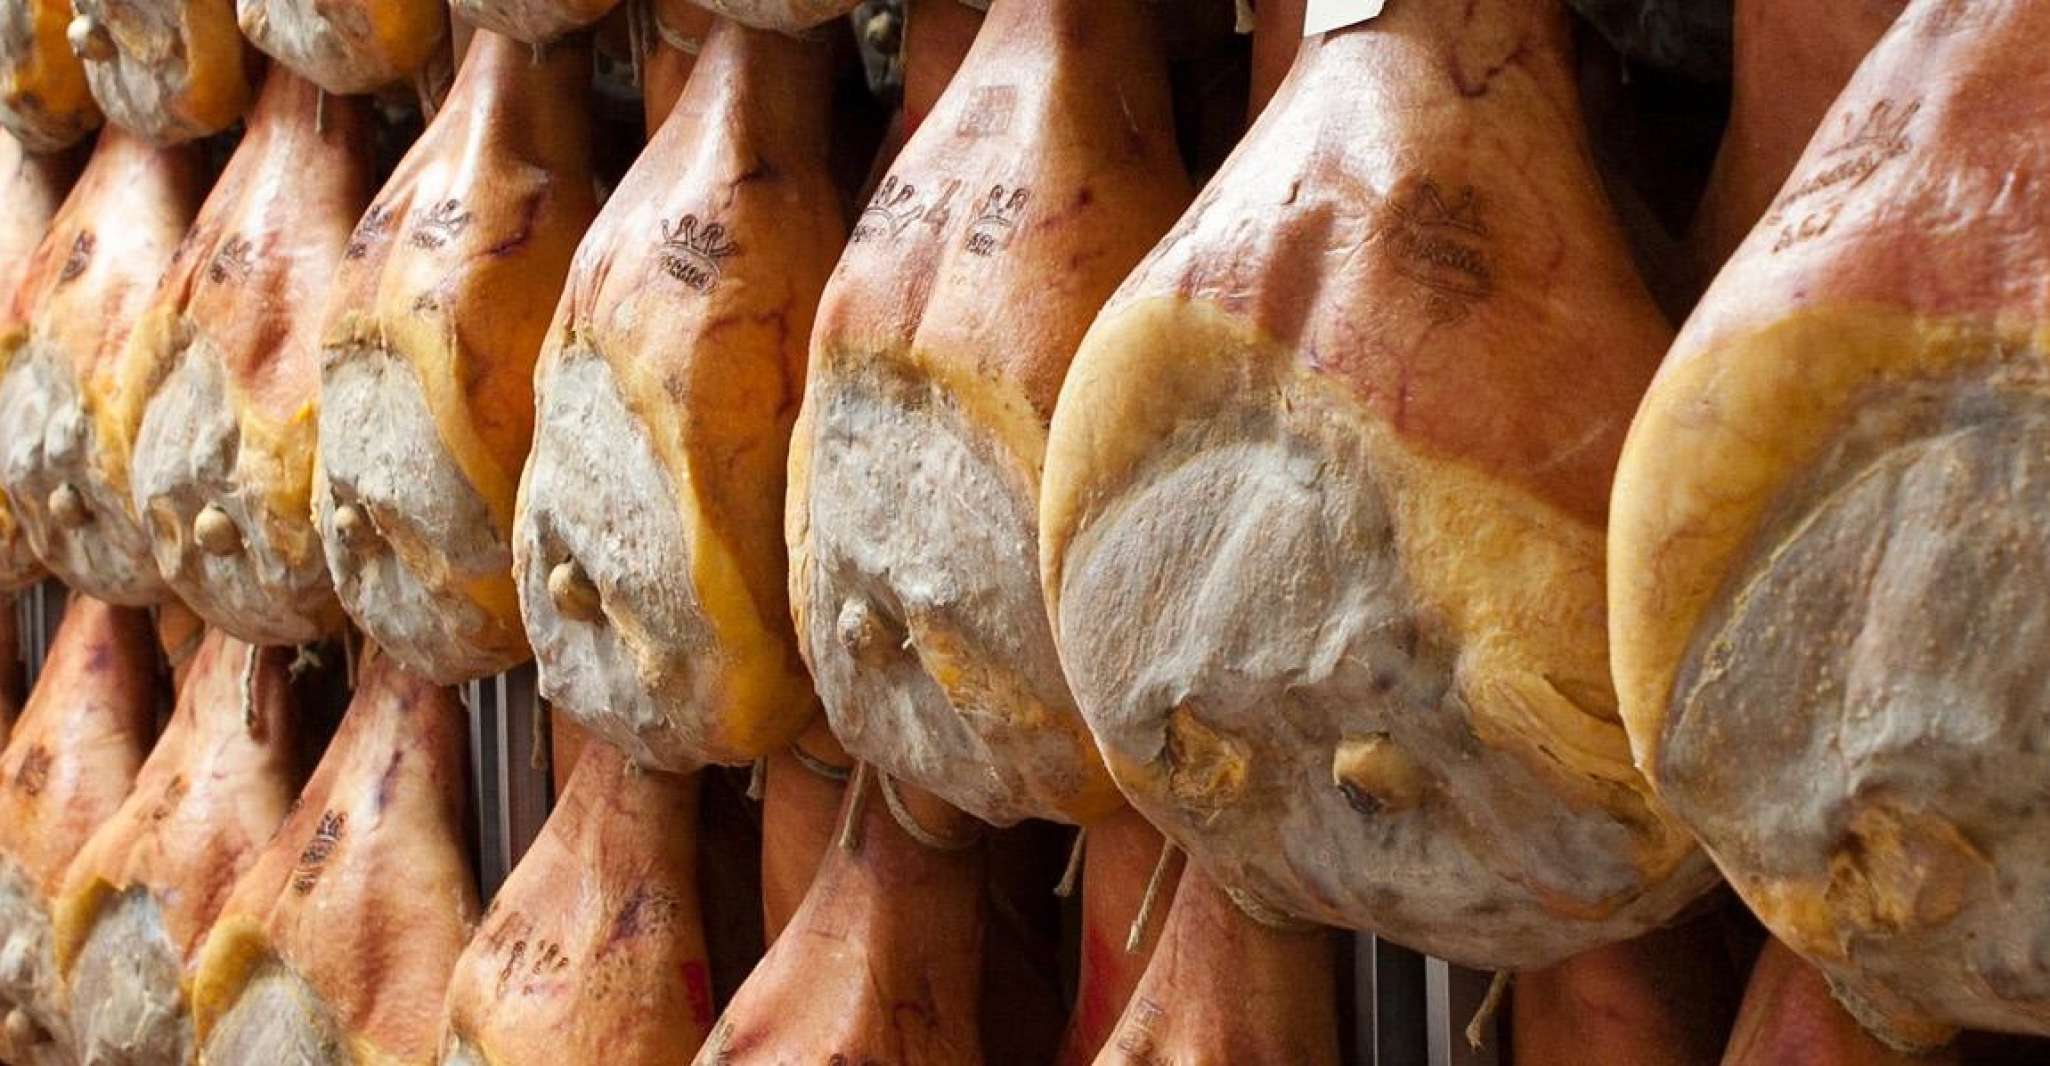 Parma, Parmigiano Production and Parma Ham Tour & Tasting - Housity